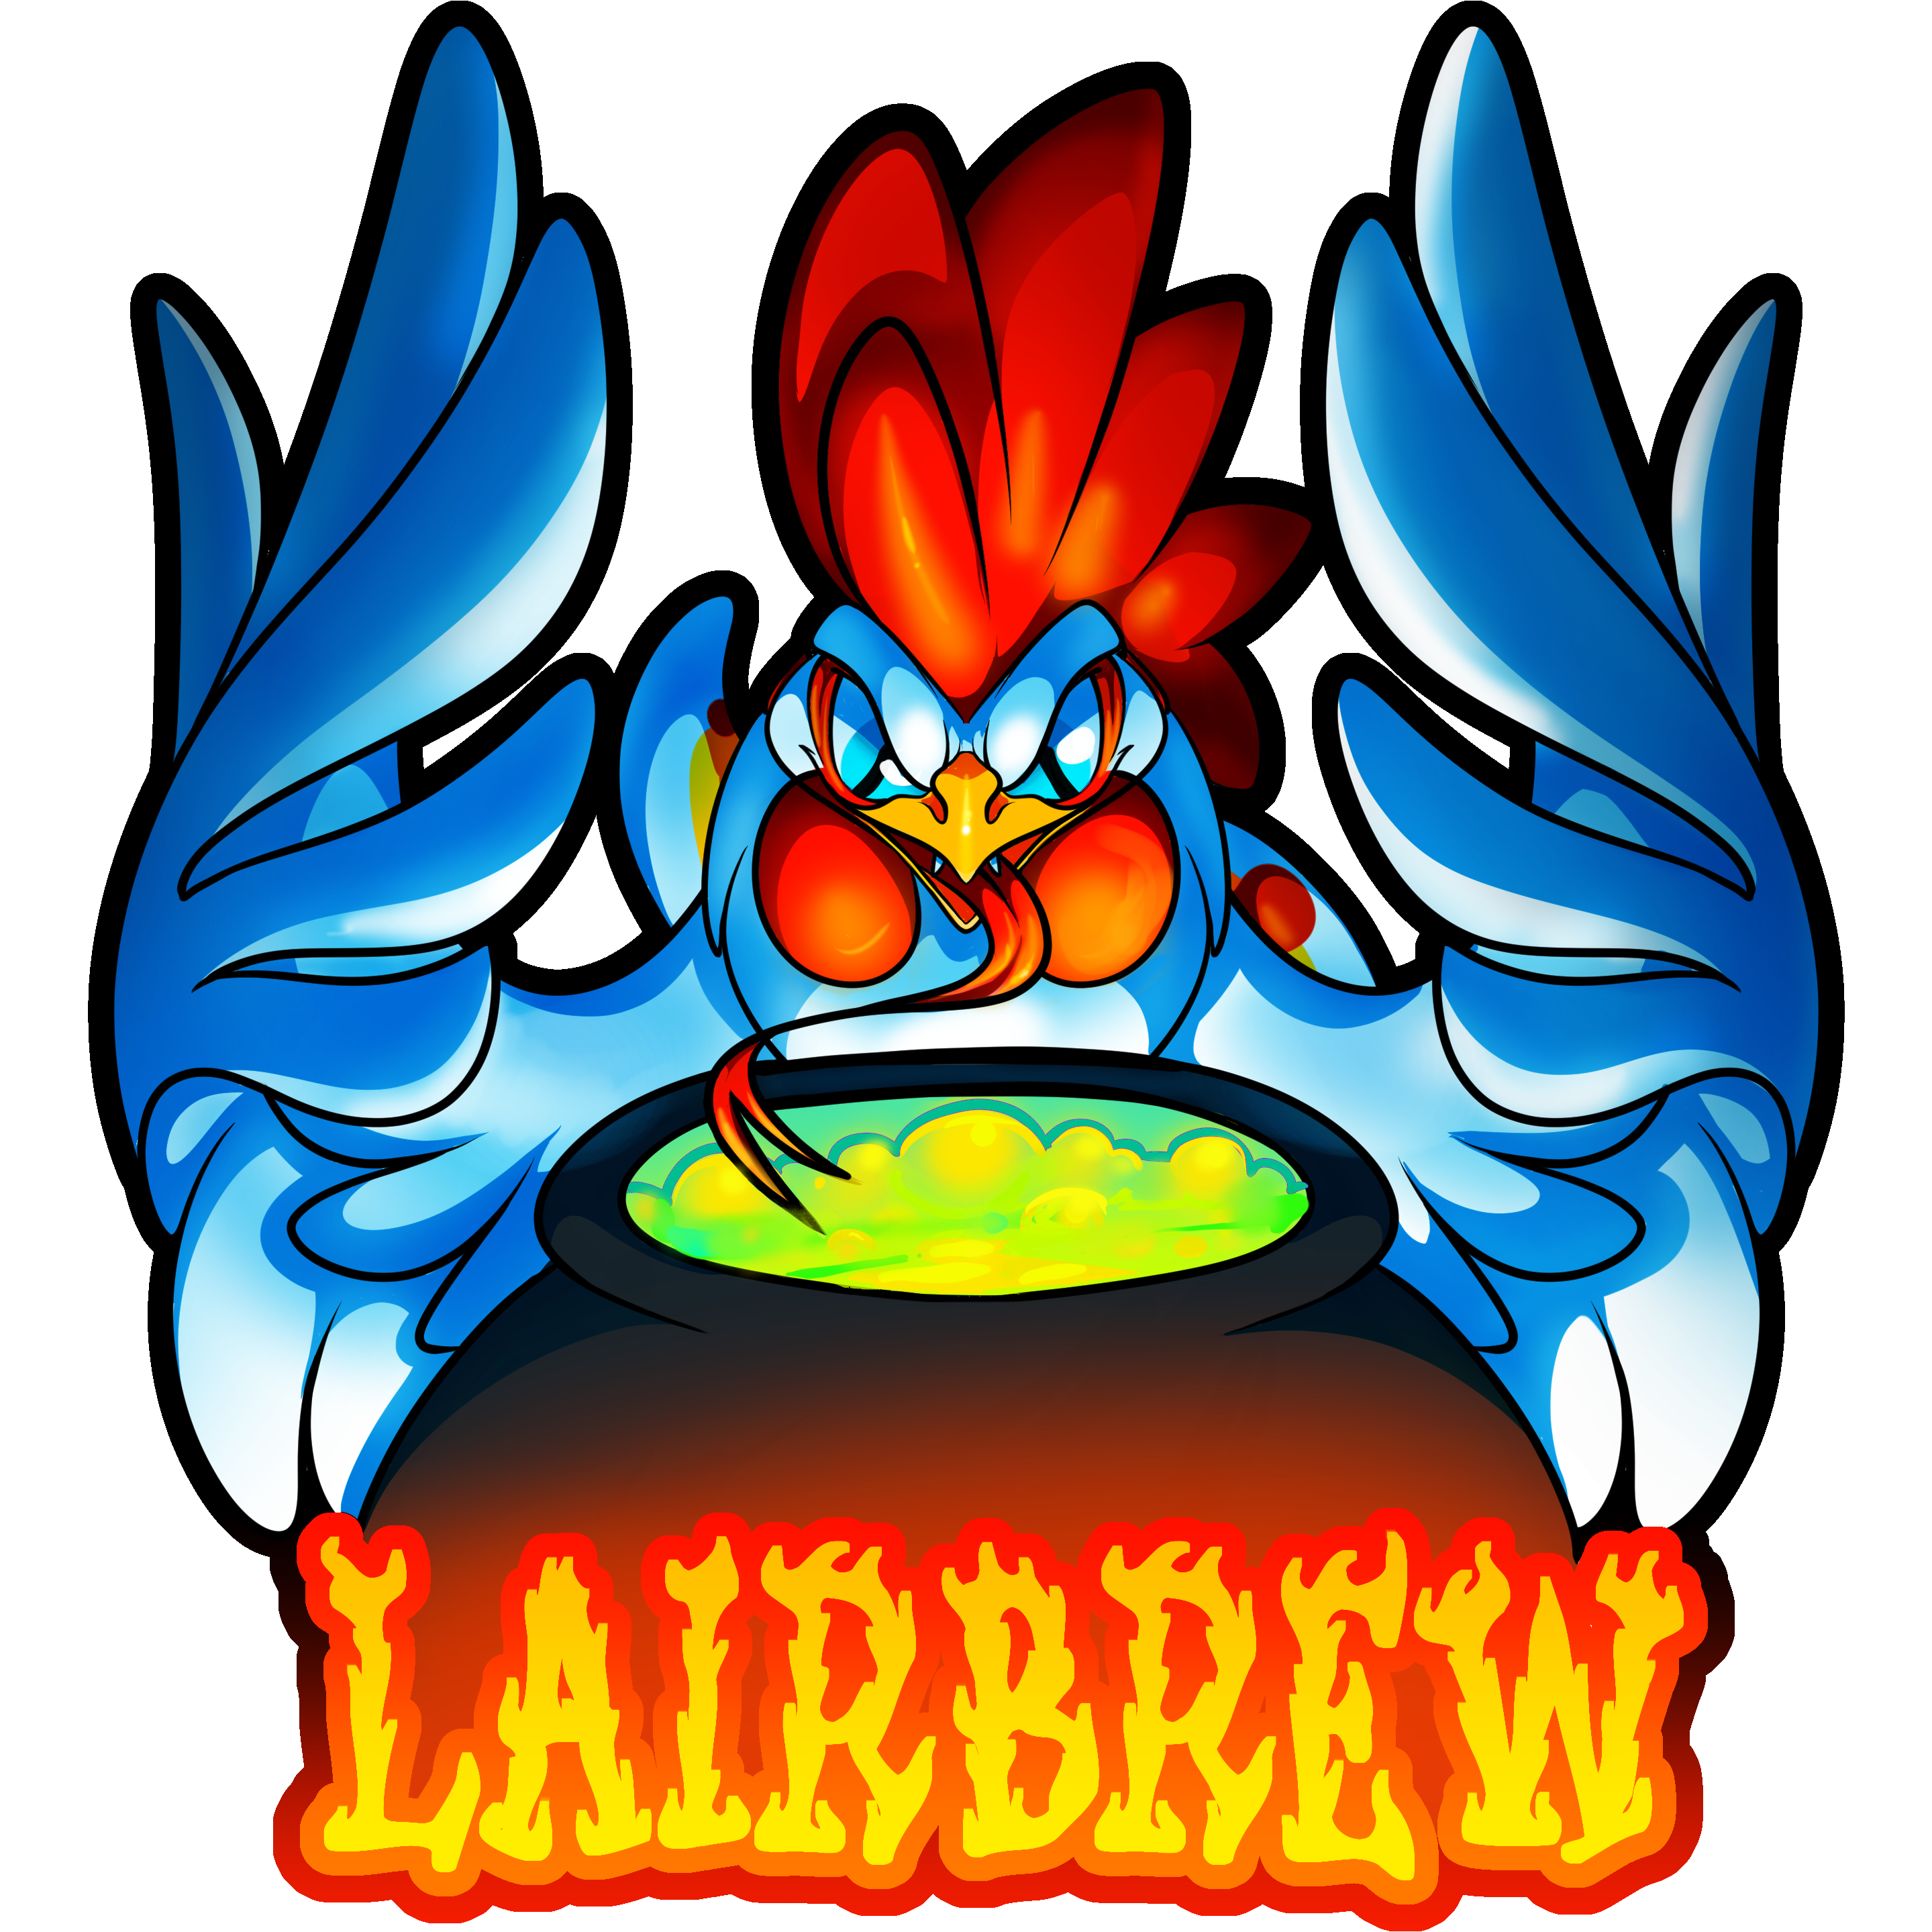 Lairbrew